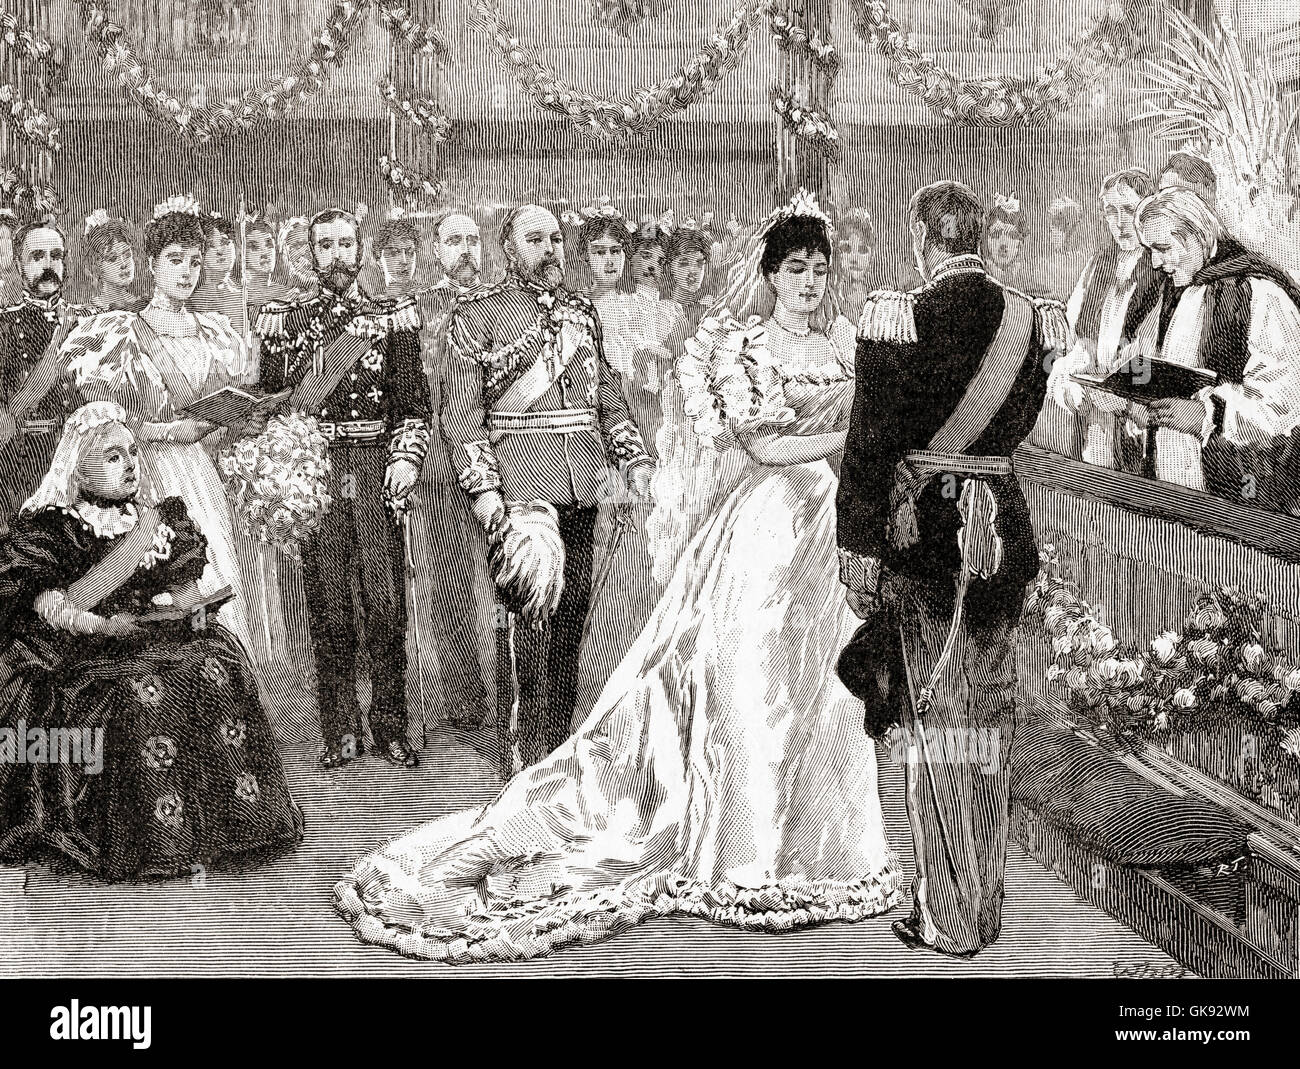 Die Ehe von Prinzessin Maud von Wales, später Königin-Gemahl von Norwegen, Prinz Carl von Dänemark, später König Haakon VII.  Maud von Wales, 1869-1938. Königin von Norwegen als Ehefrau von König Haakon VII. Stockfoto